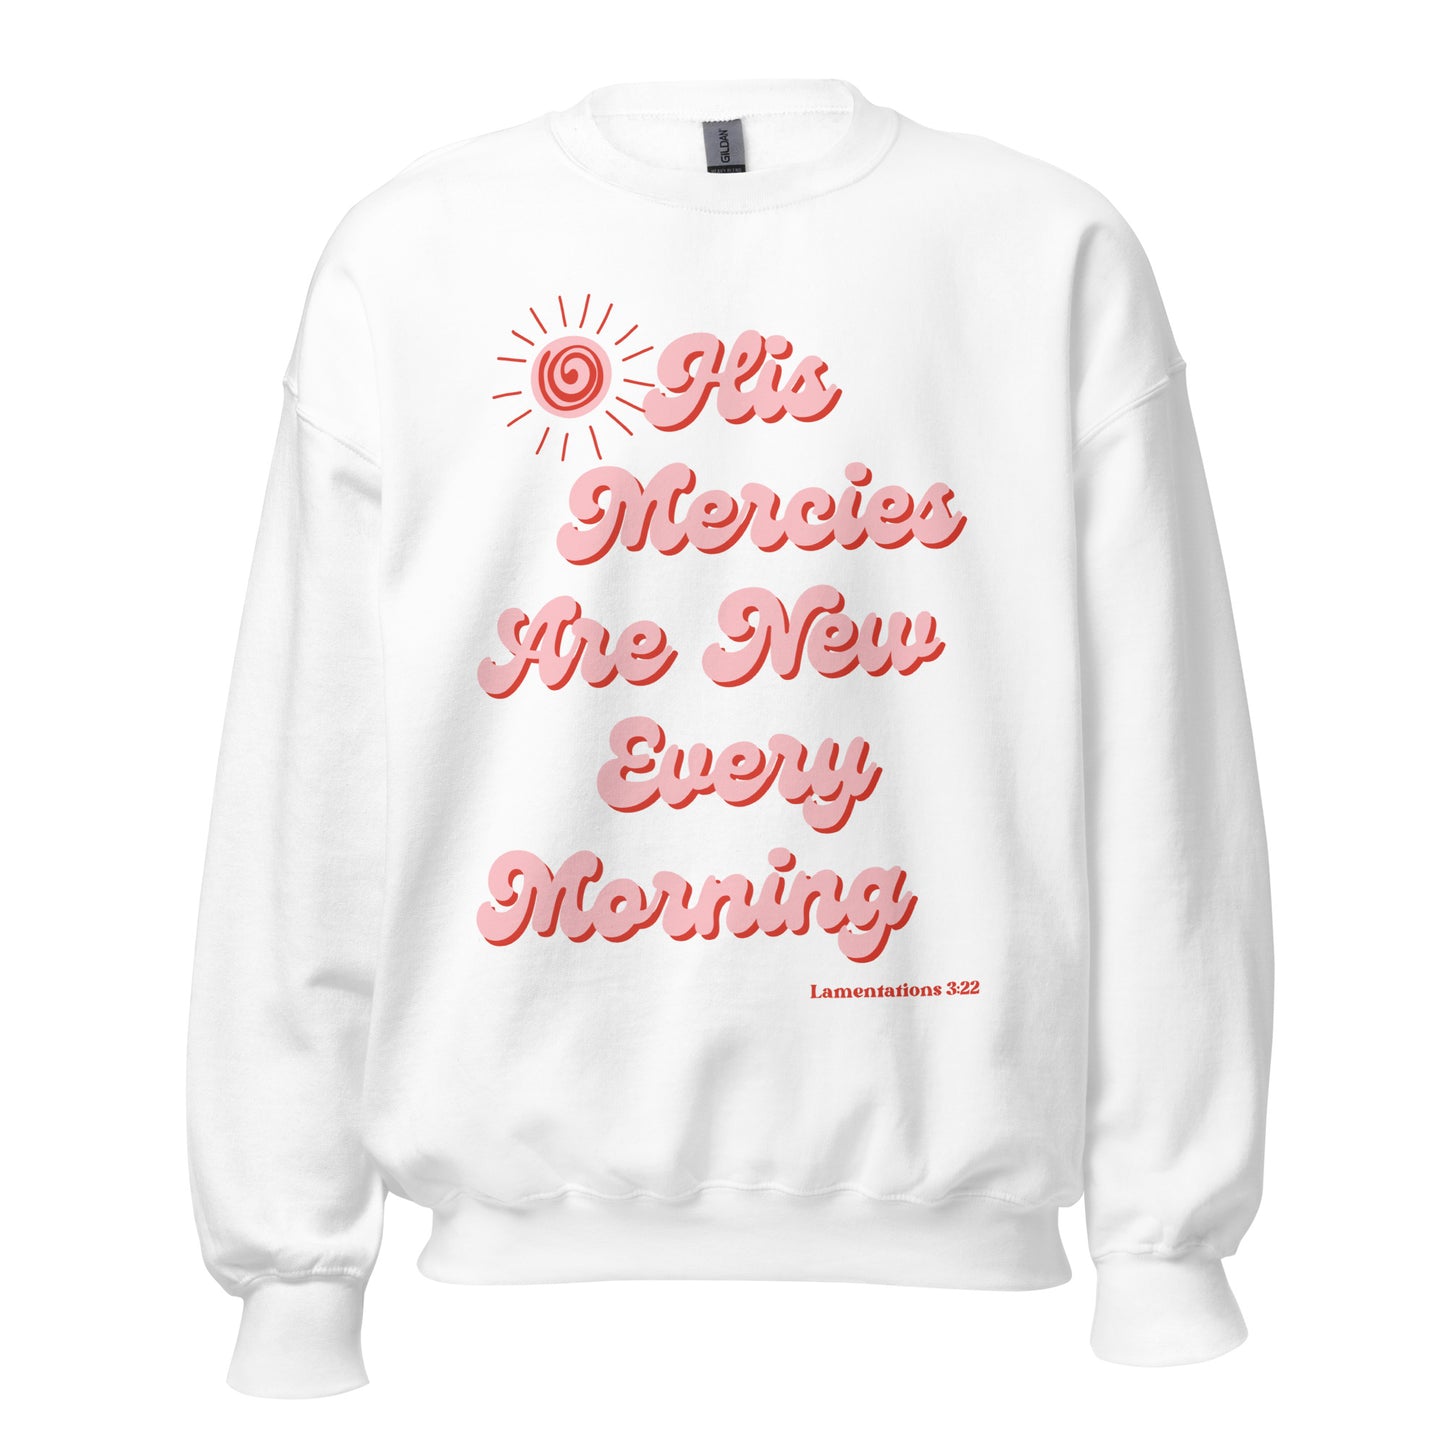 His mercies sweatshirt